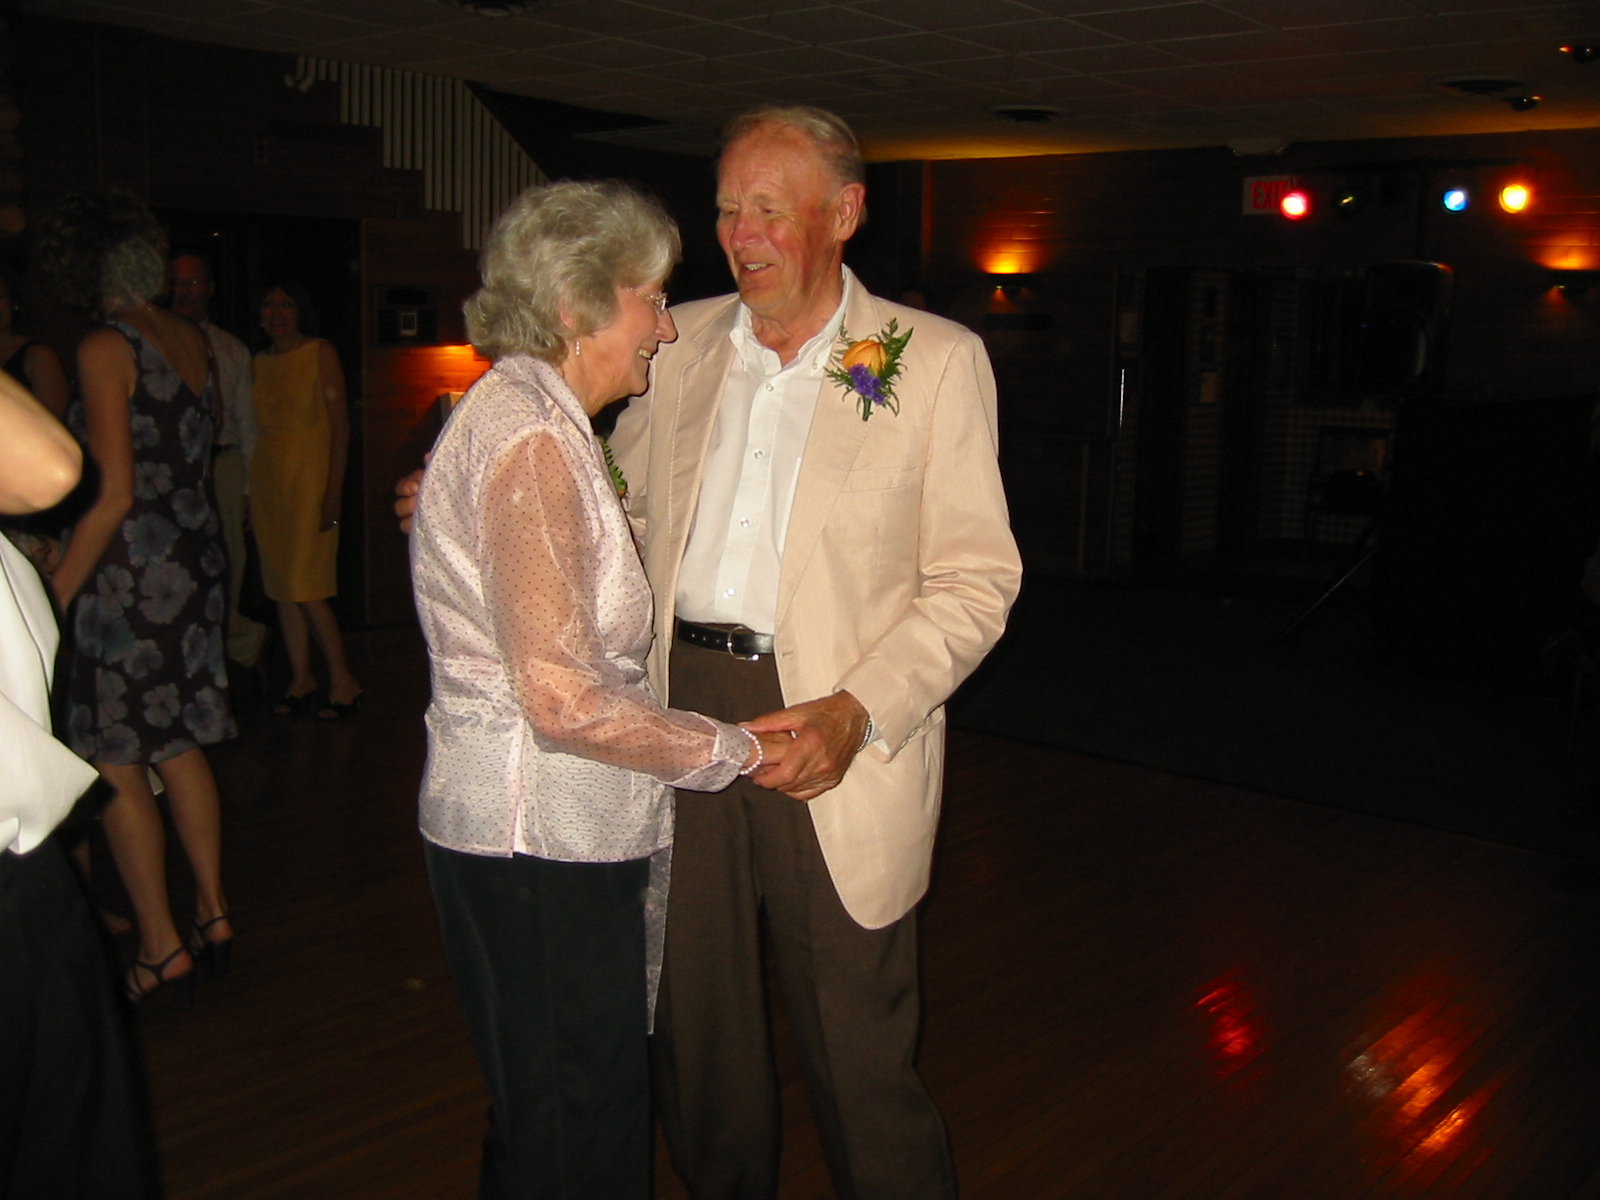 Grandma and Grandpa Dancing